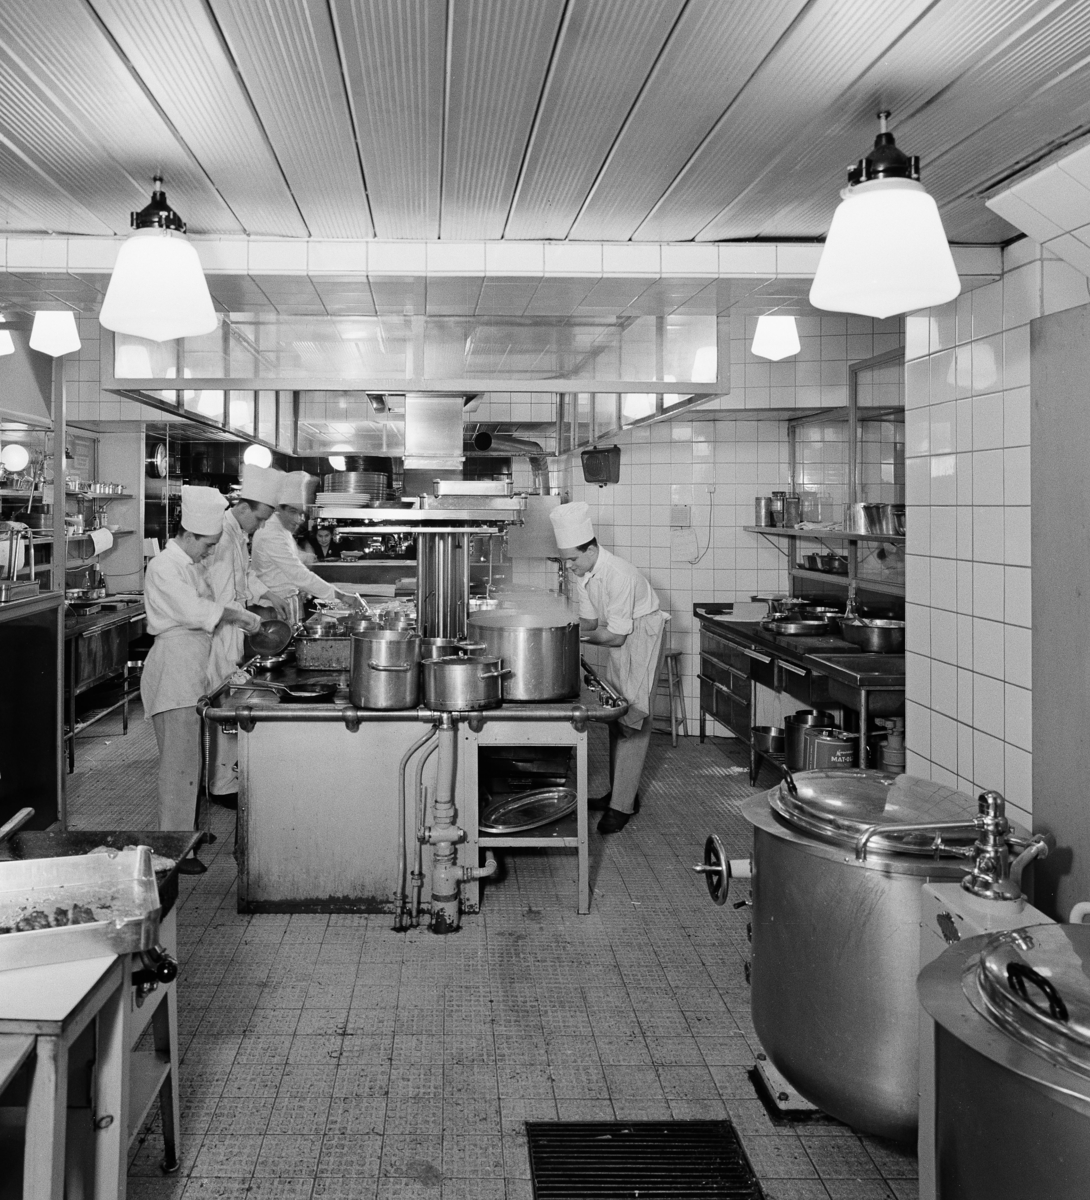 Bäckahästen
Interiör av storkök med kockar.